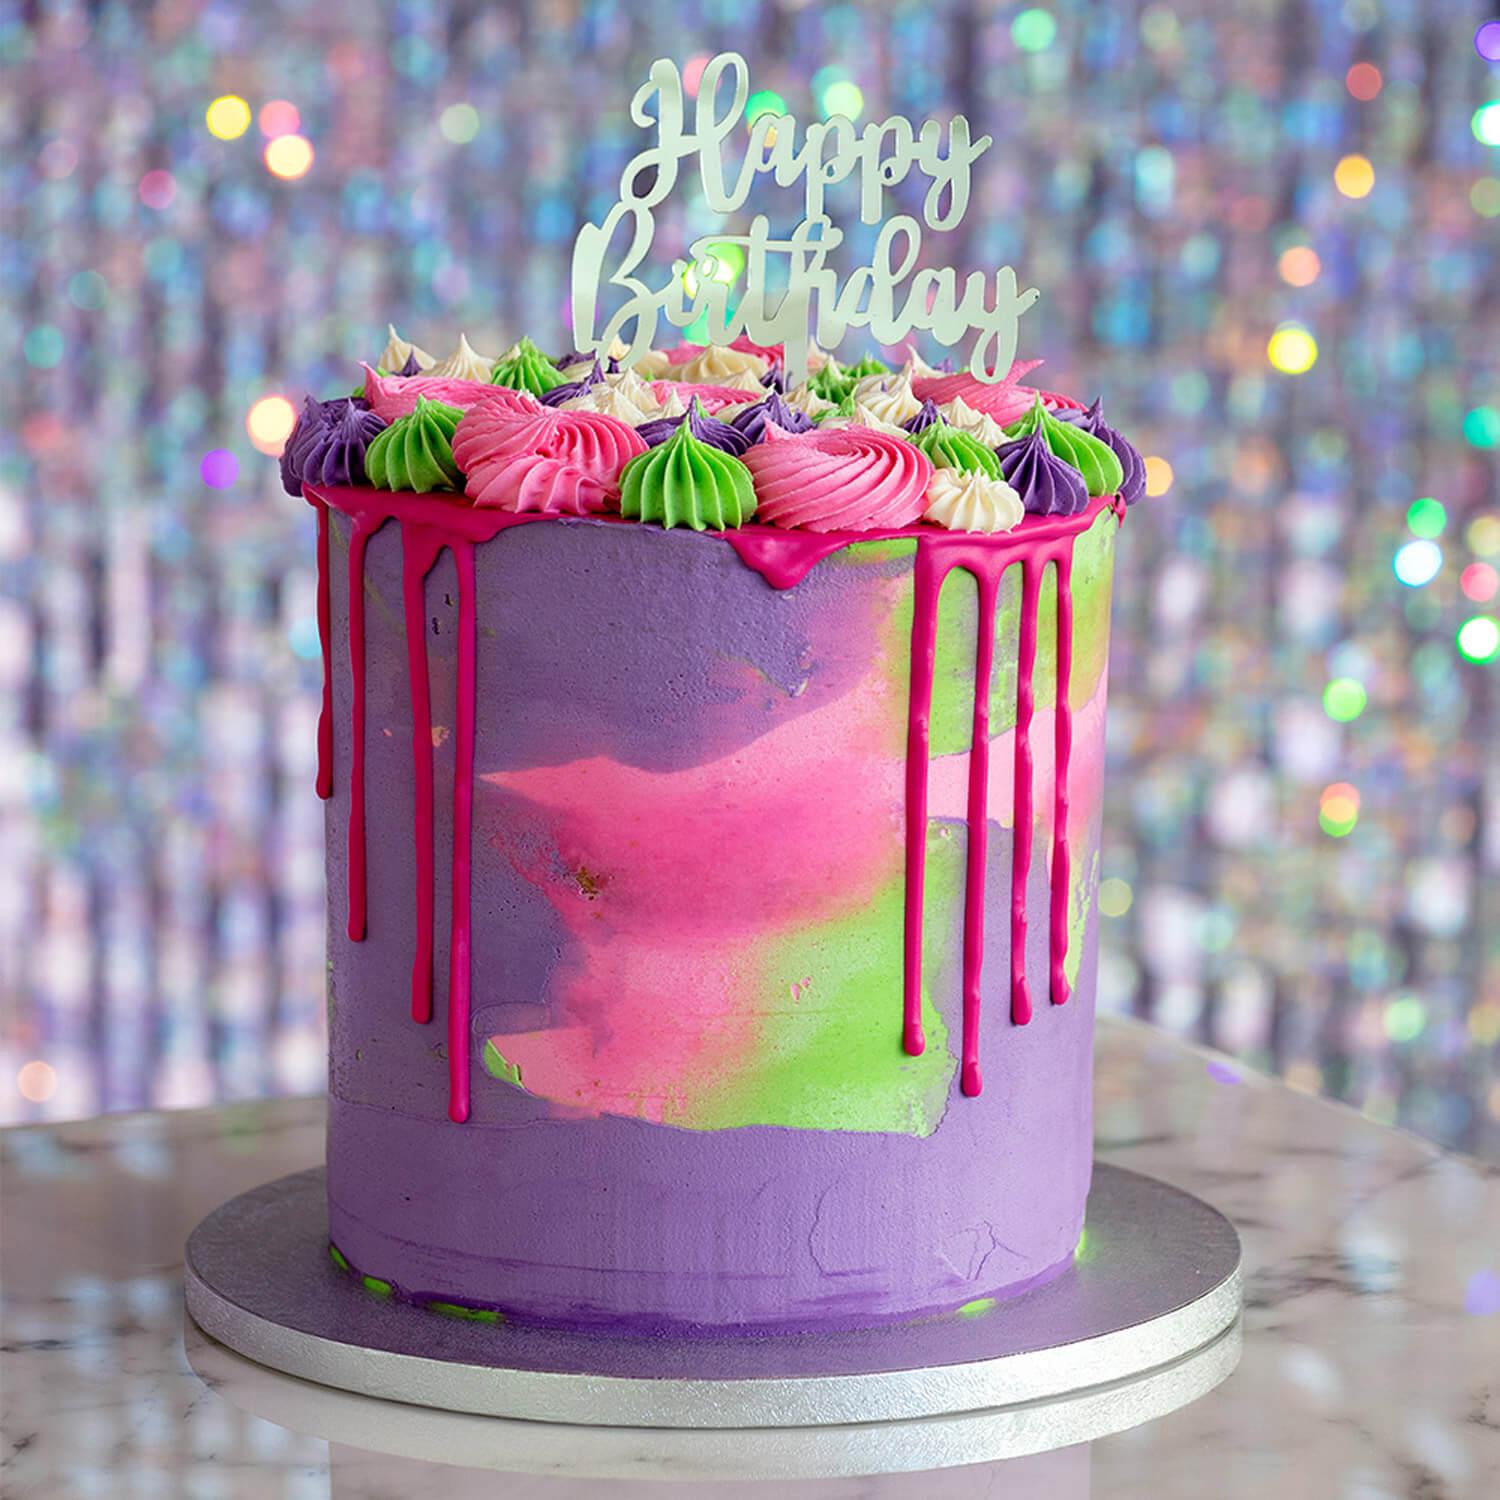 Pique de gâteau \\Happy Birthday\\\